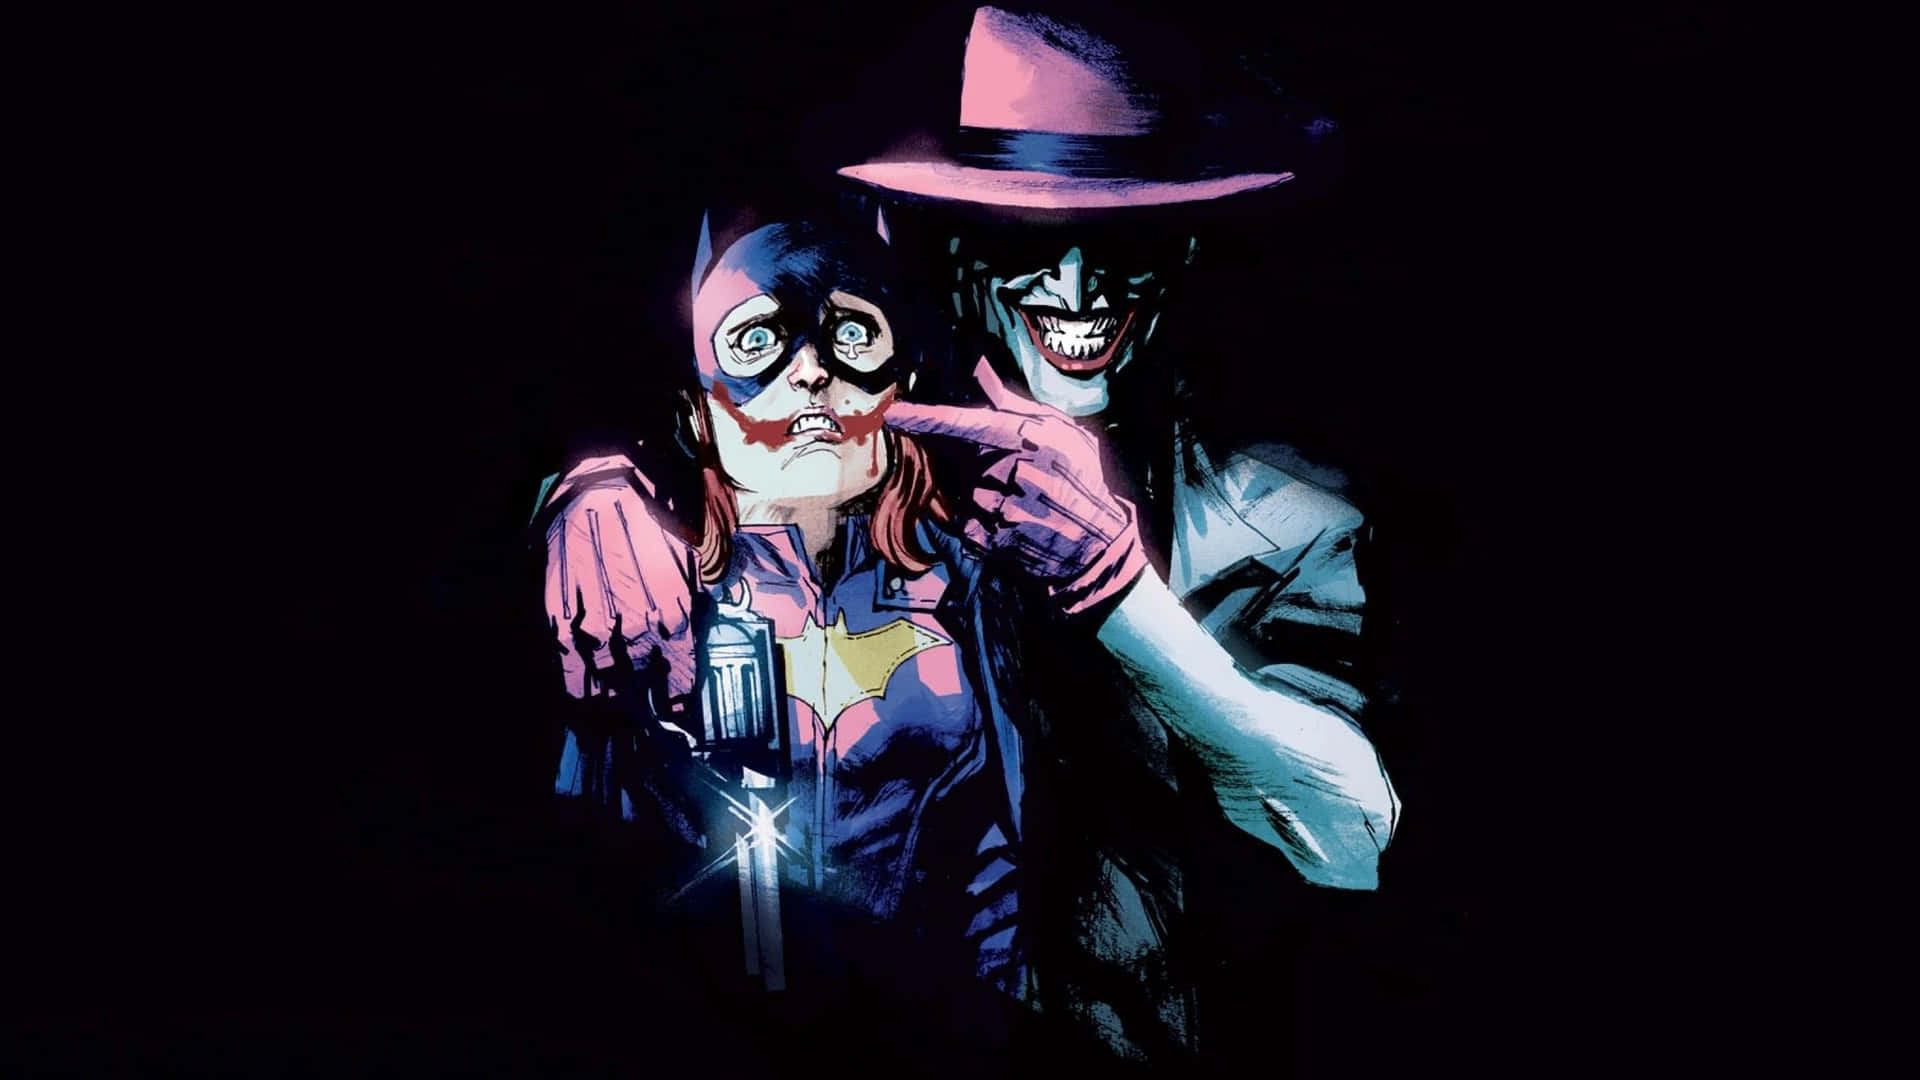 Intense Joker Illustration from a Comic Book Wallpaper